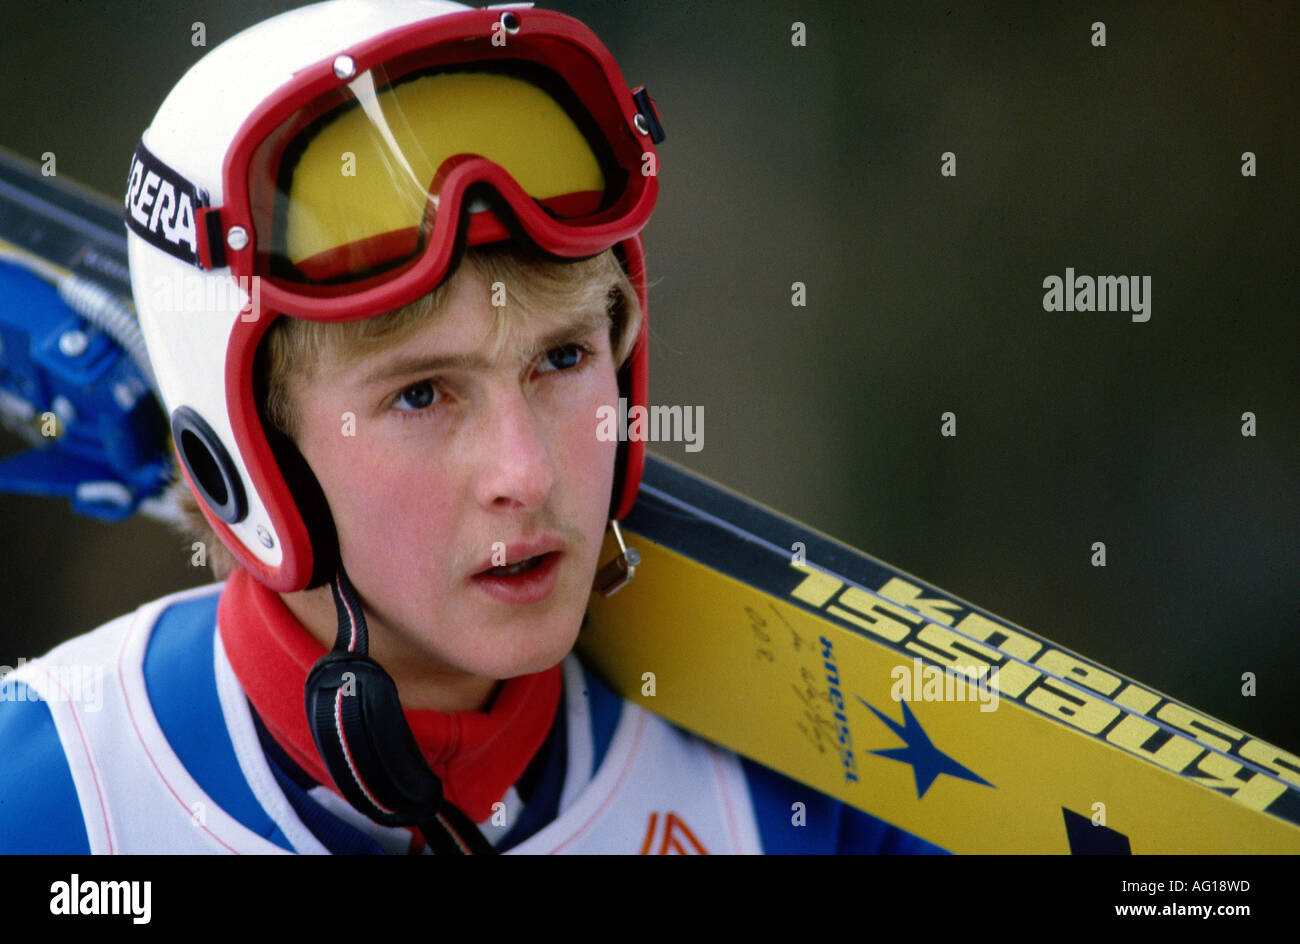 German Athlete Ski Jumping Stock Photos German Athlete Ski regarding Ski Jumping Athletes